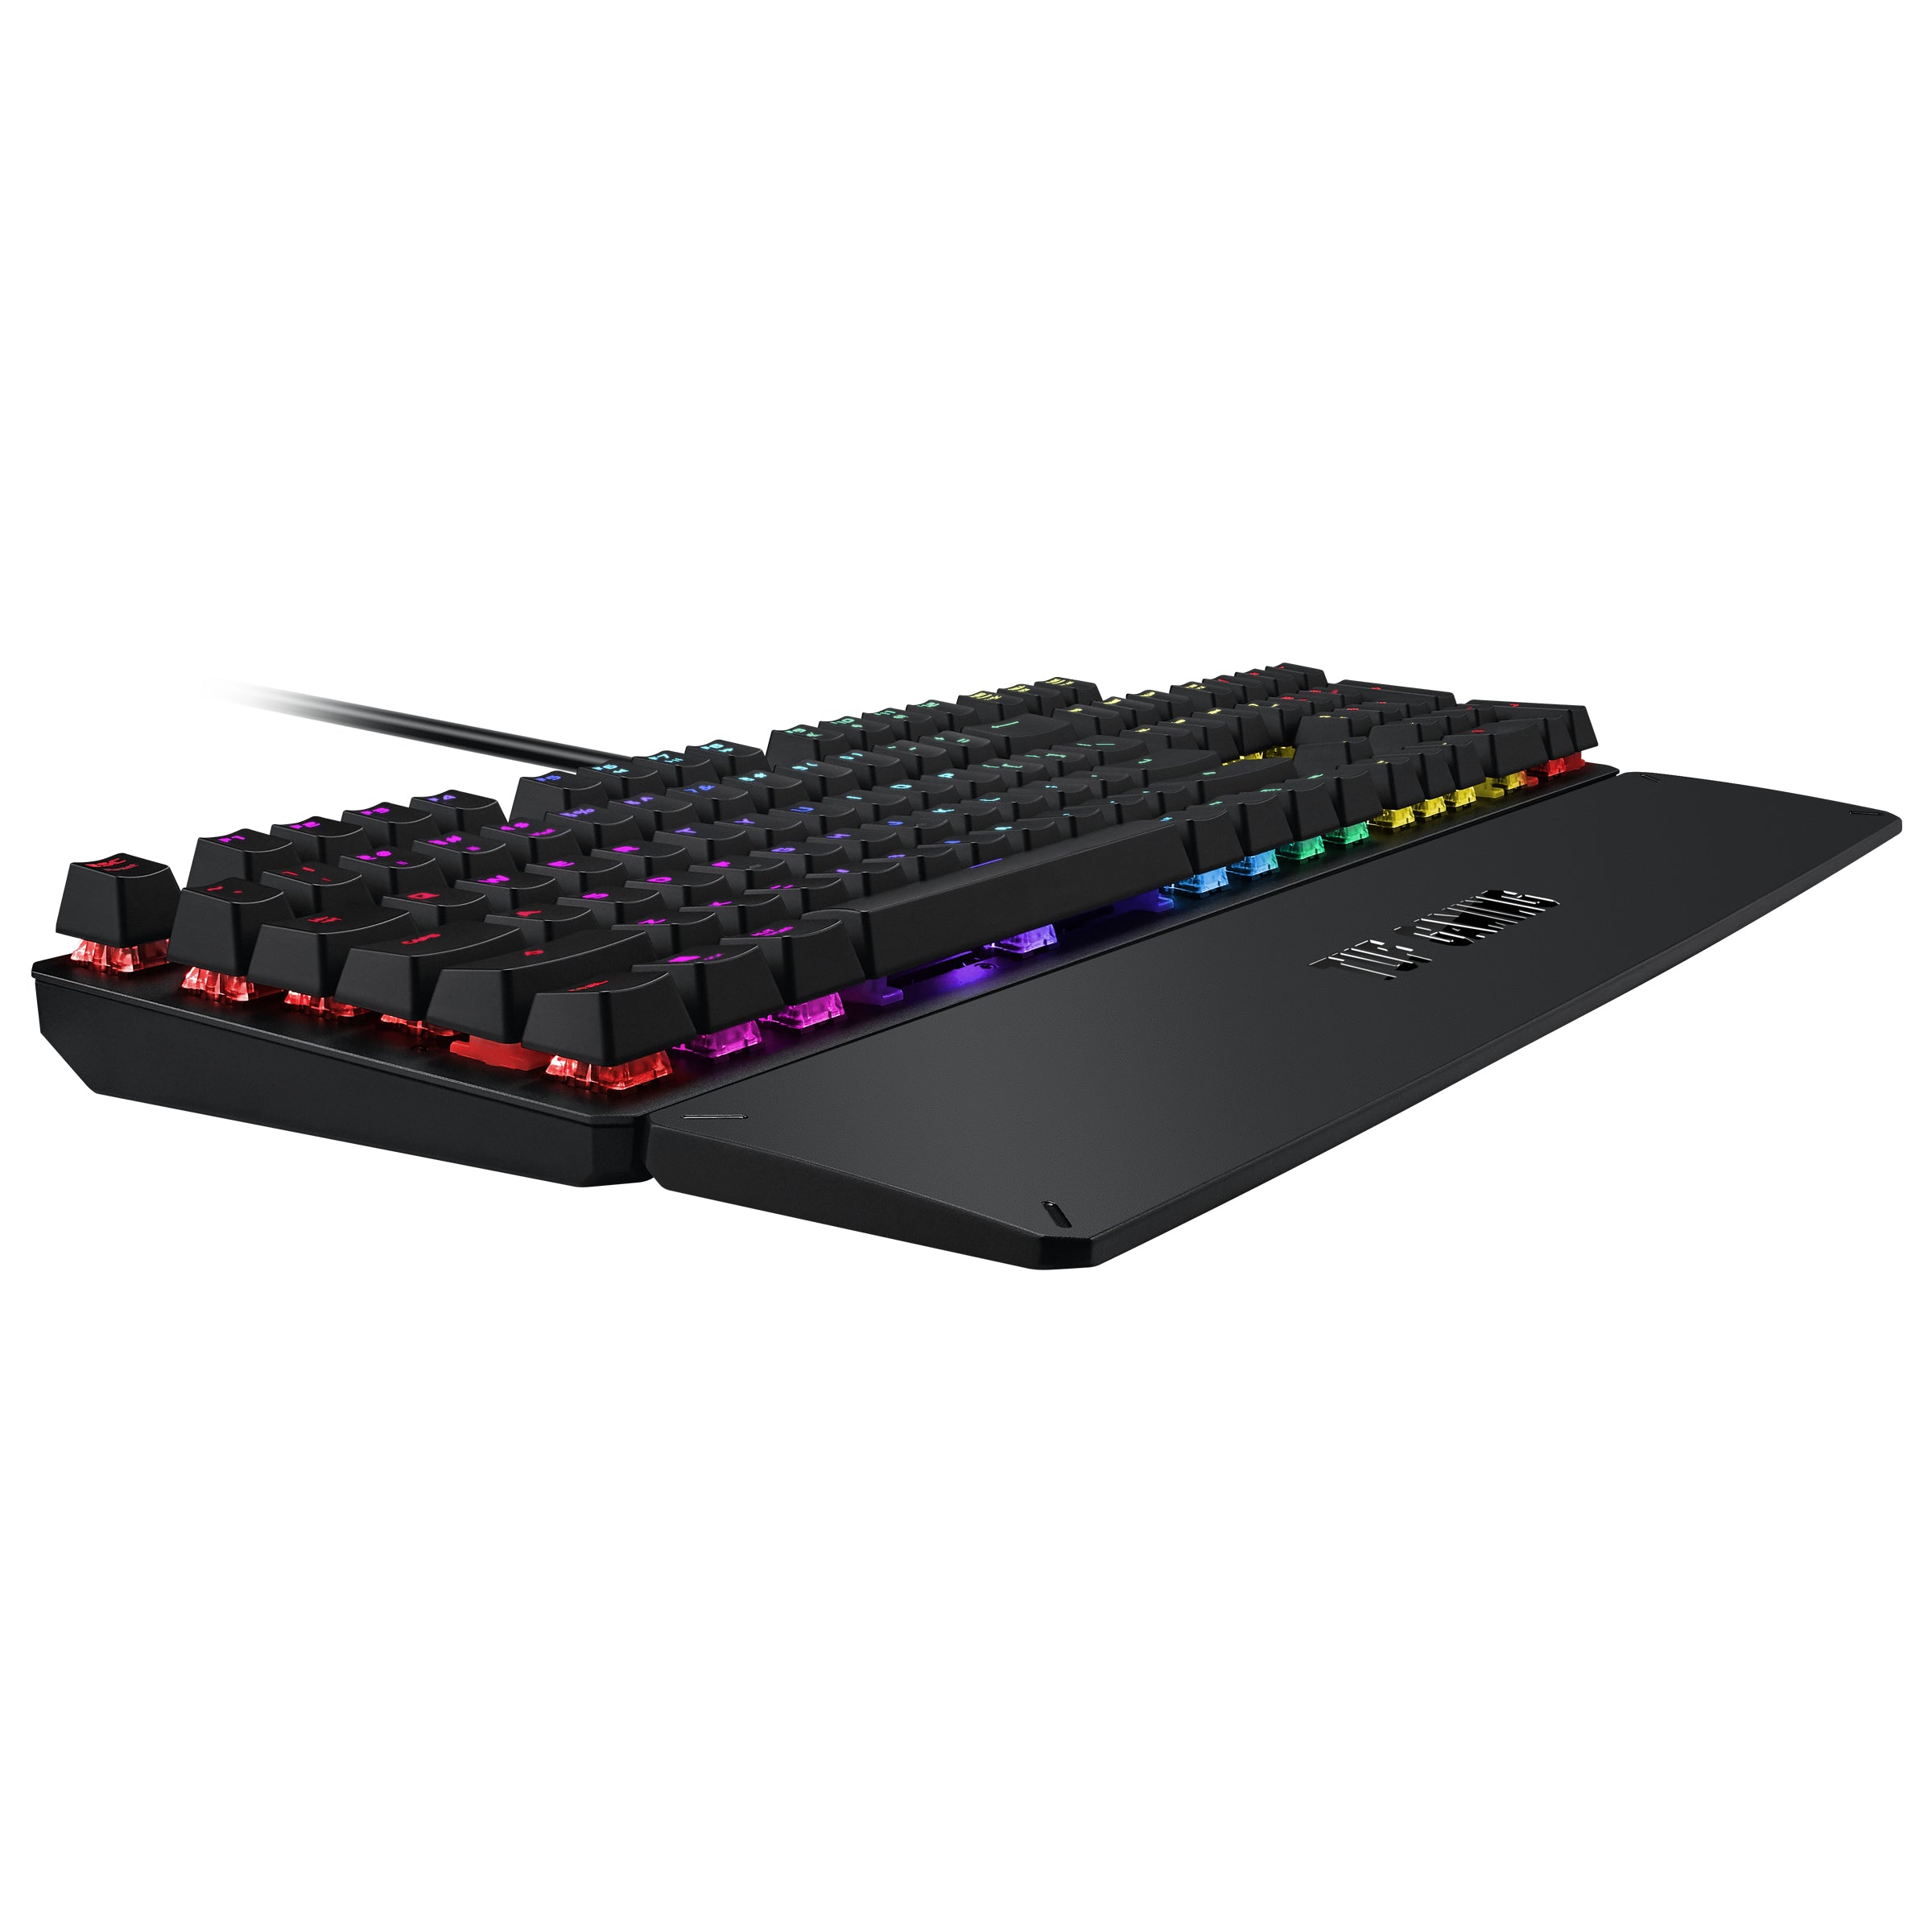 ASUS TUF K3 (RA05) Gaming Keyboard